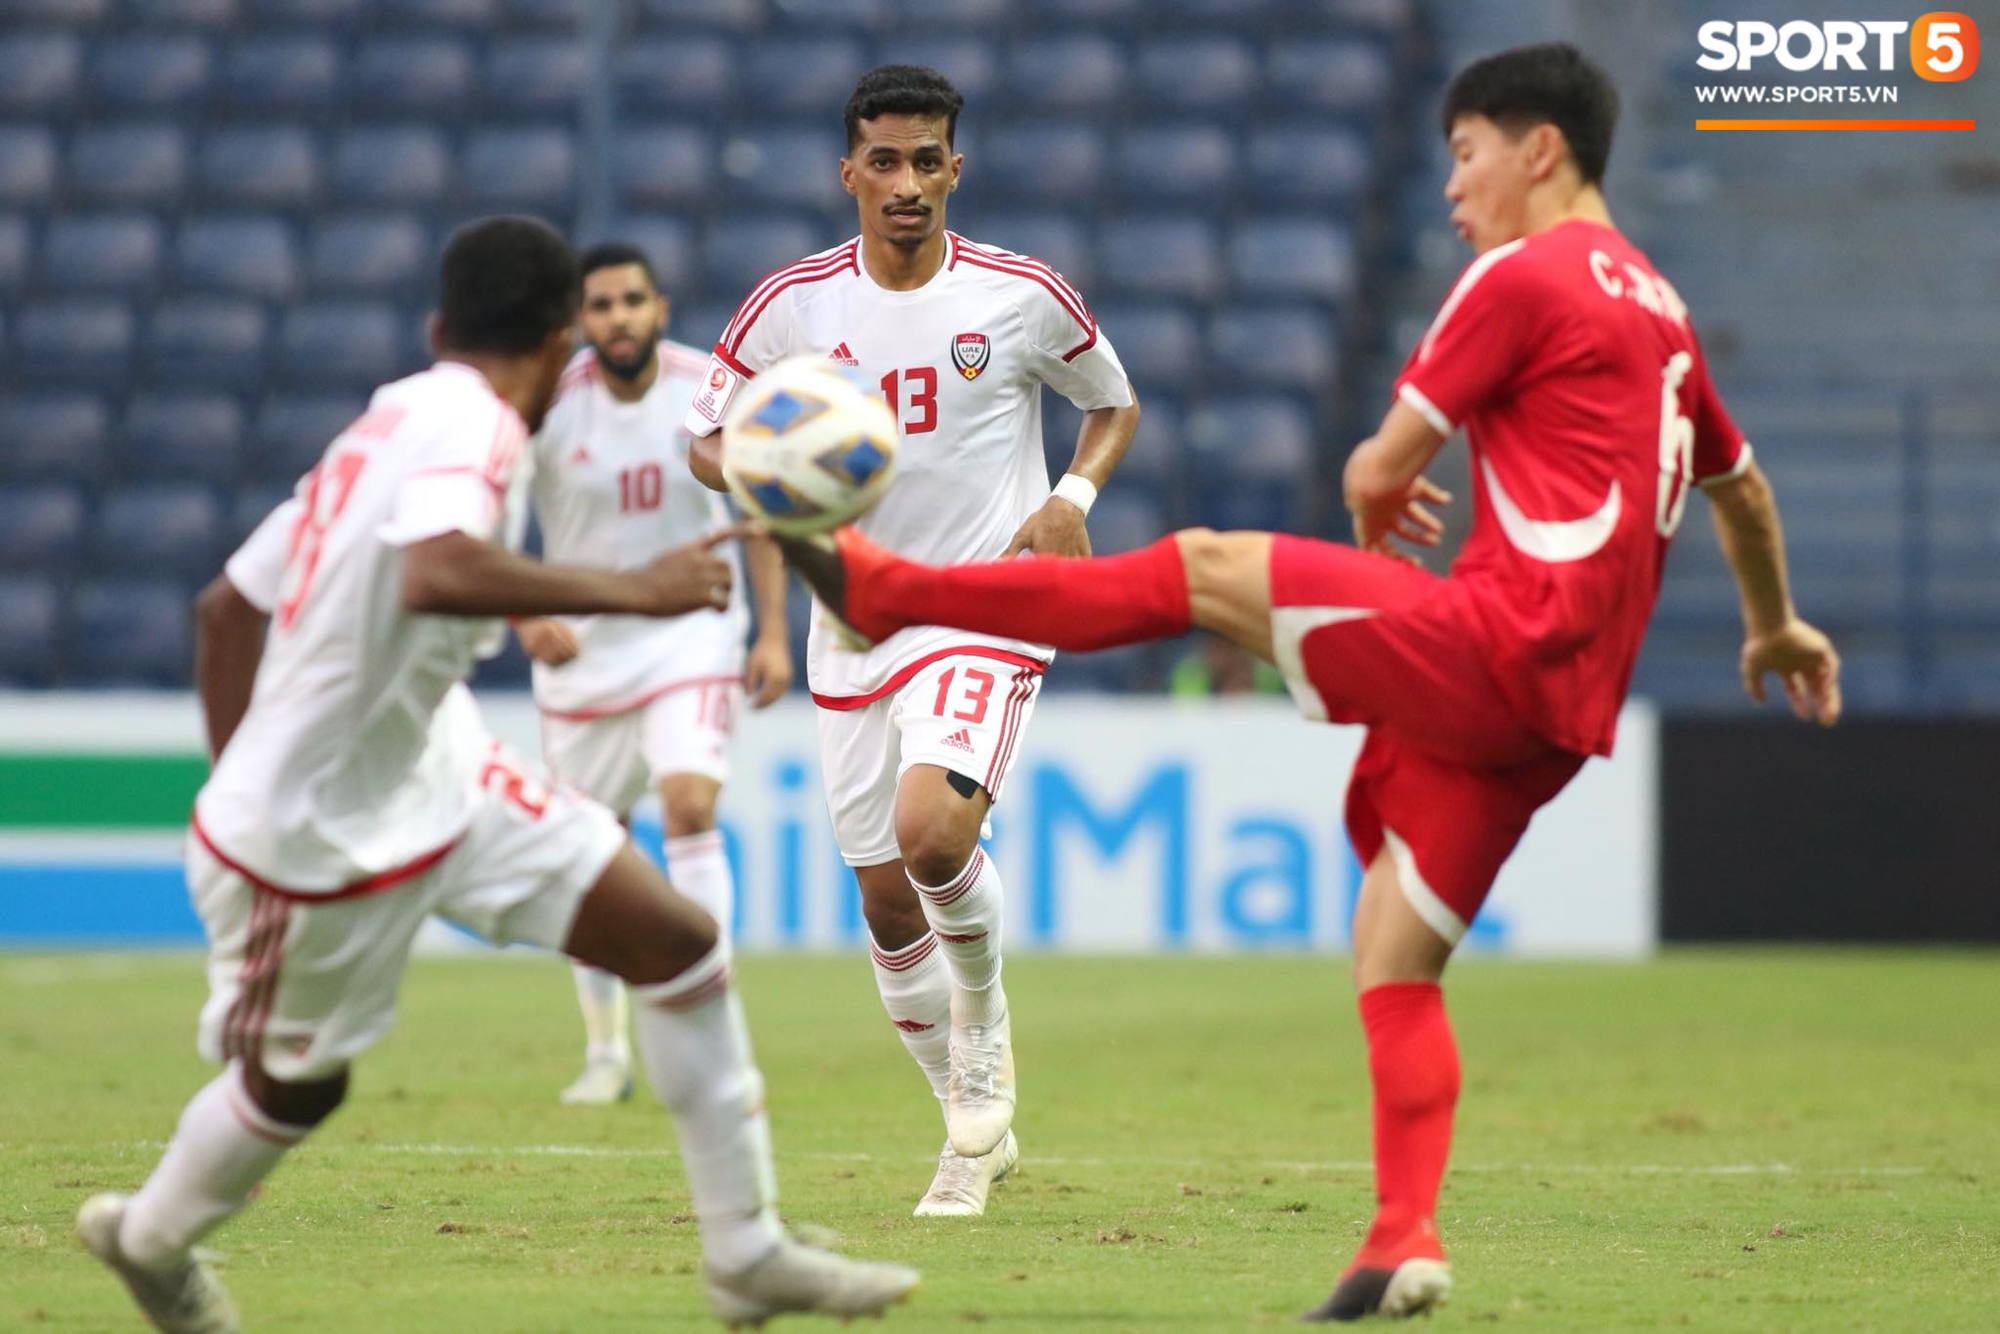 [Bảng D - VCK U23 châu Á] U23 UAE 2-0 U23 Triều Tiên: Thắng dễ Triều Tiên, UAE đẩy Việt Nam vào cửa tử - Ảnh 7.